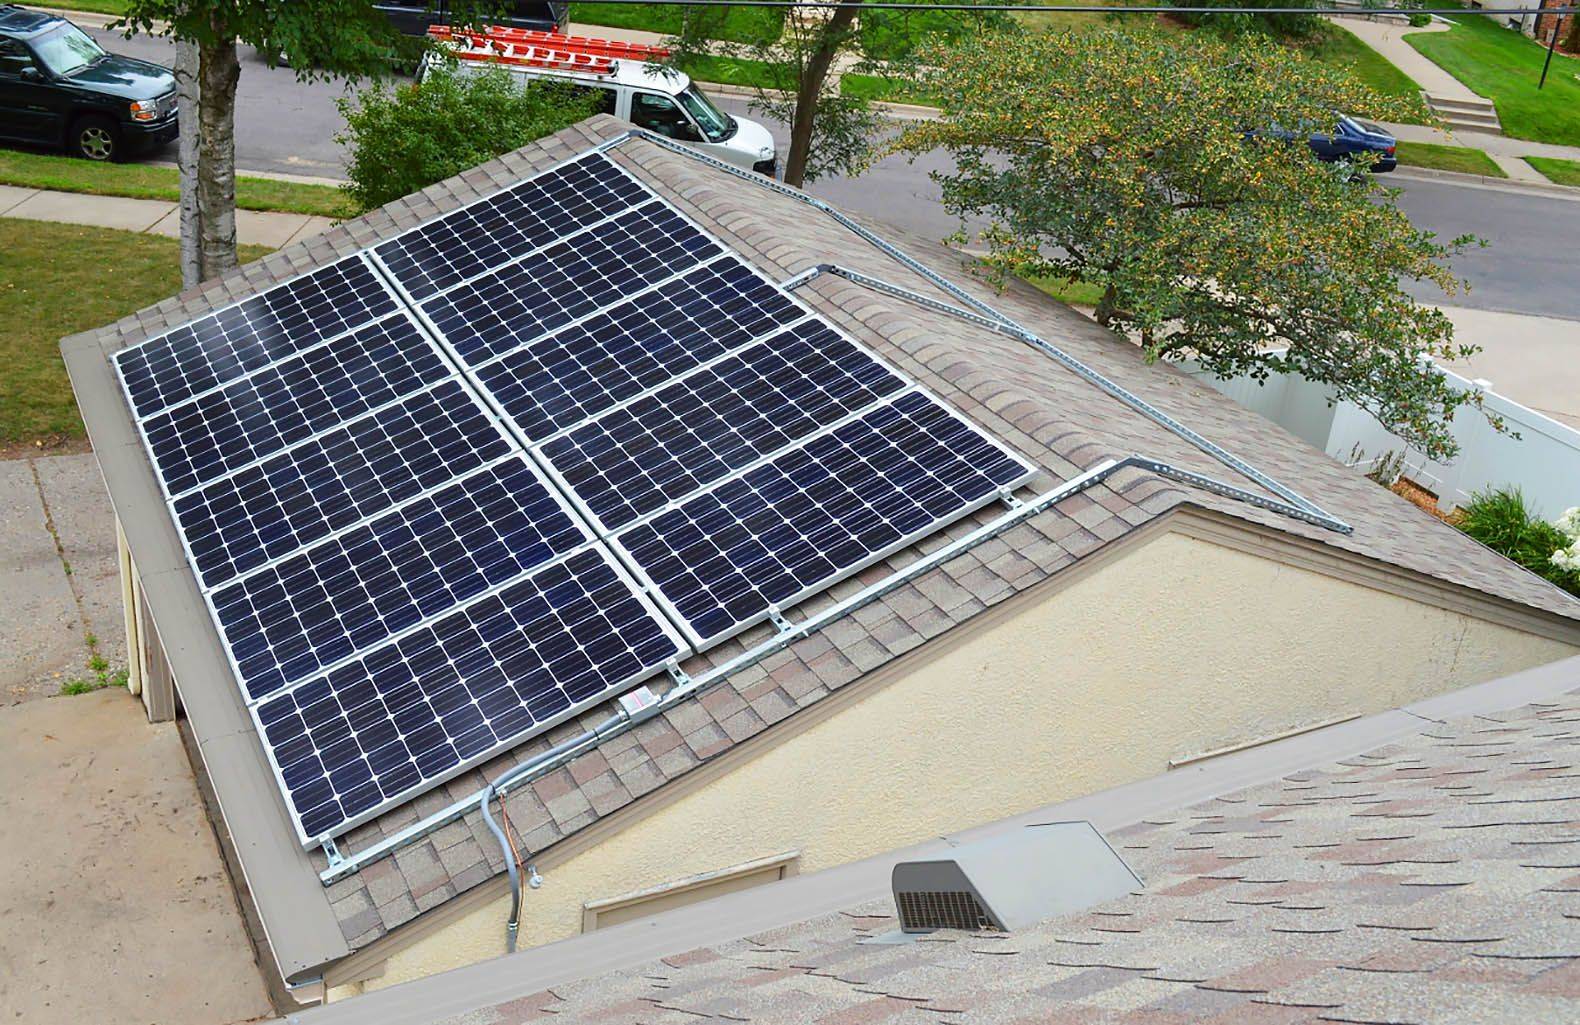 Угол наклона и ориентация солнечных батарей для максимальной производительности